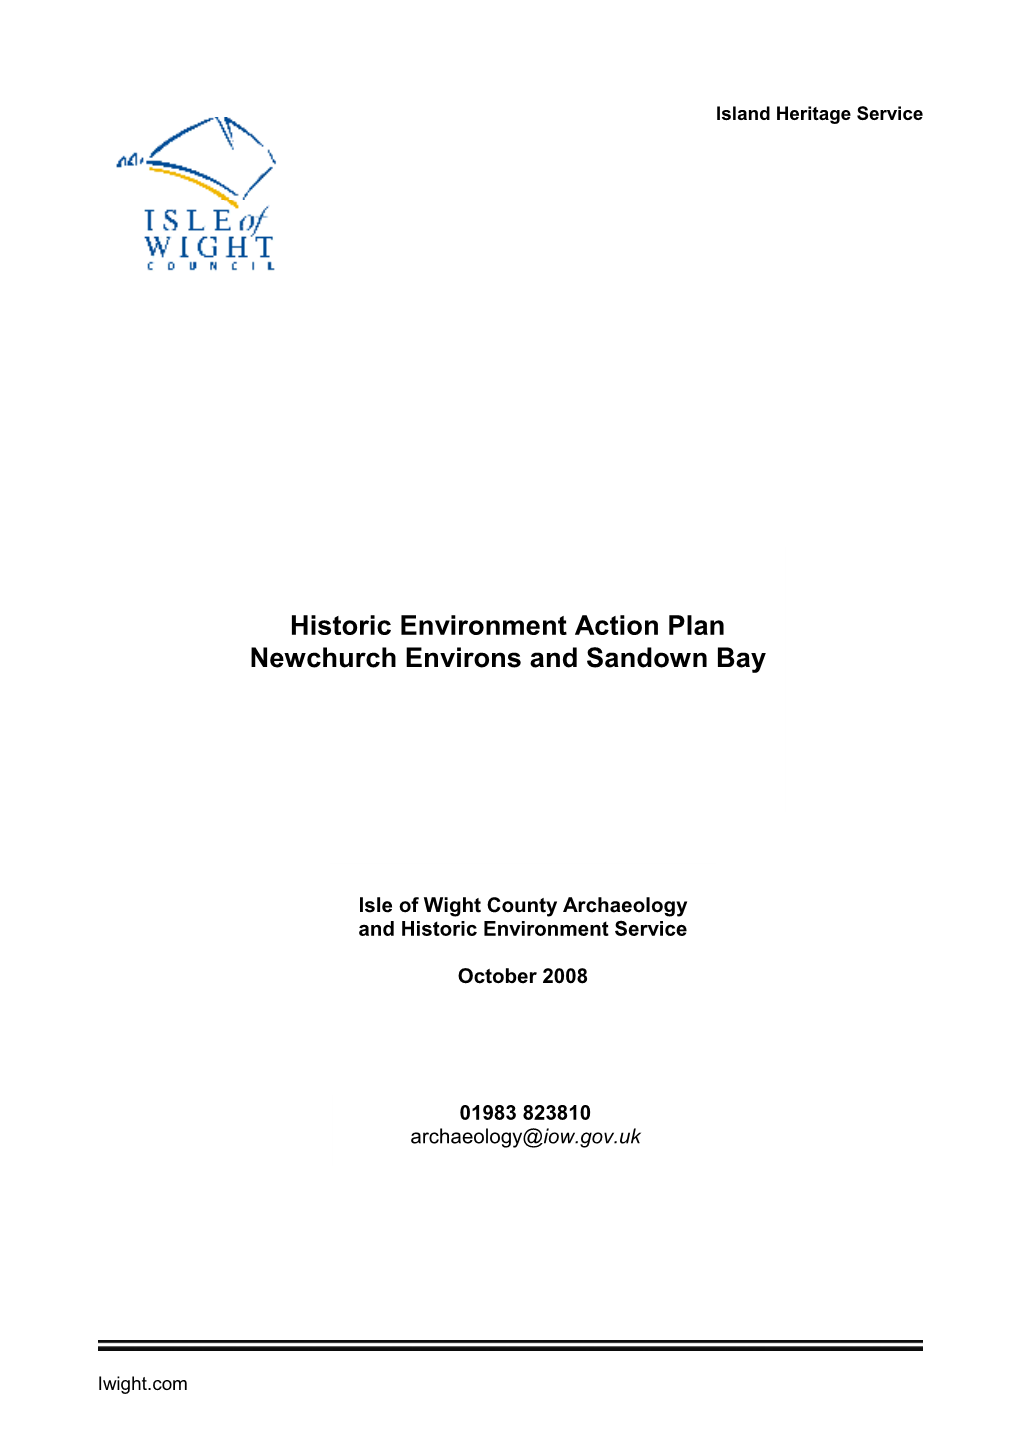 Newchurch Environs and Sandown Bay HEAP